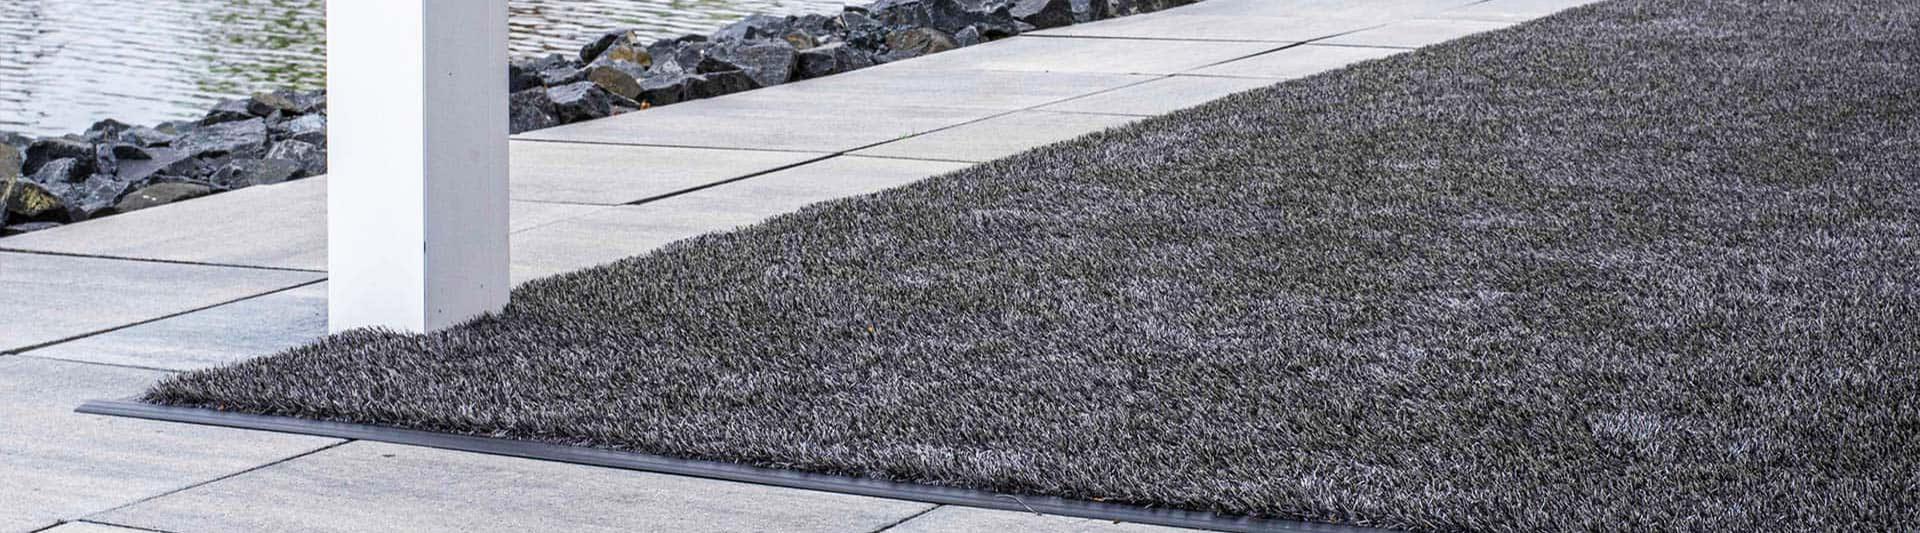 Antraciet kunstgras tapijt op een terras aan het water